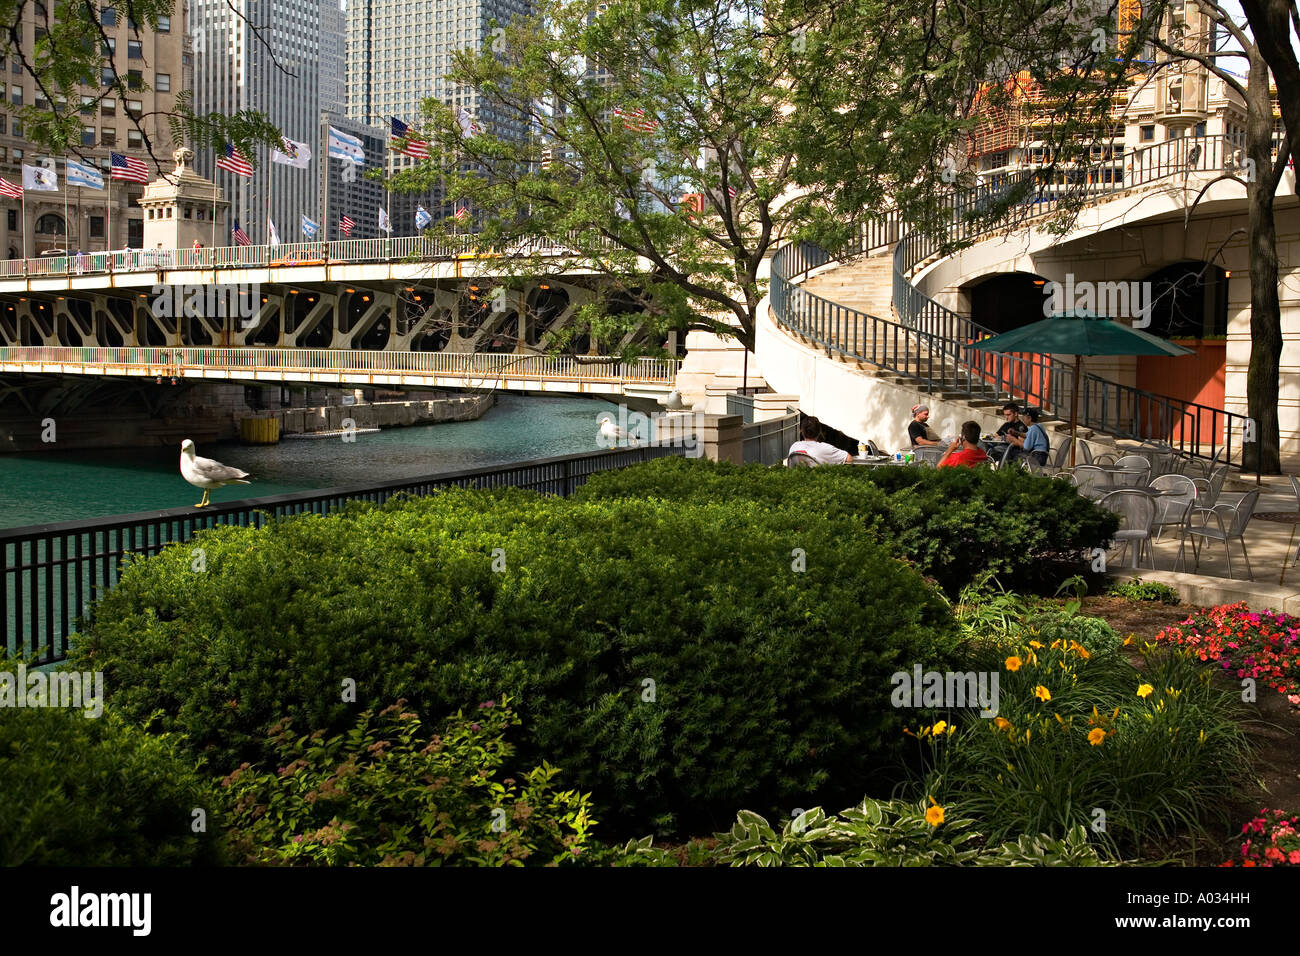 ILLINOIS Chicago posti a sedere all'aperto lungo il fiume Chicago scalinata curva double decker Michigan Avenue bridge Foto Stock